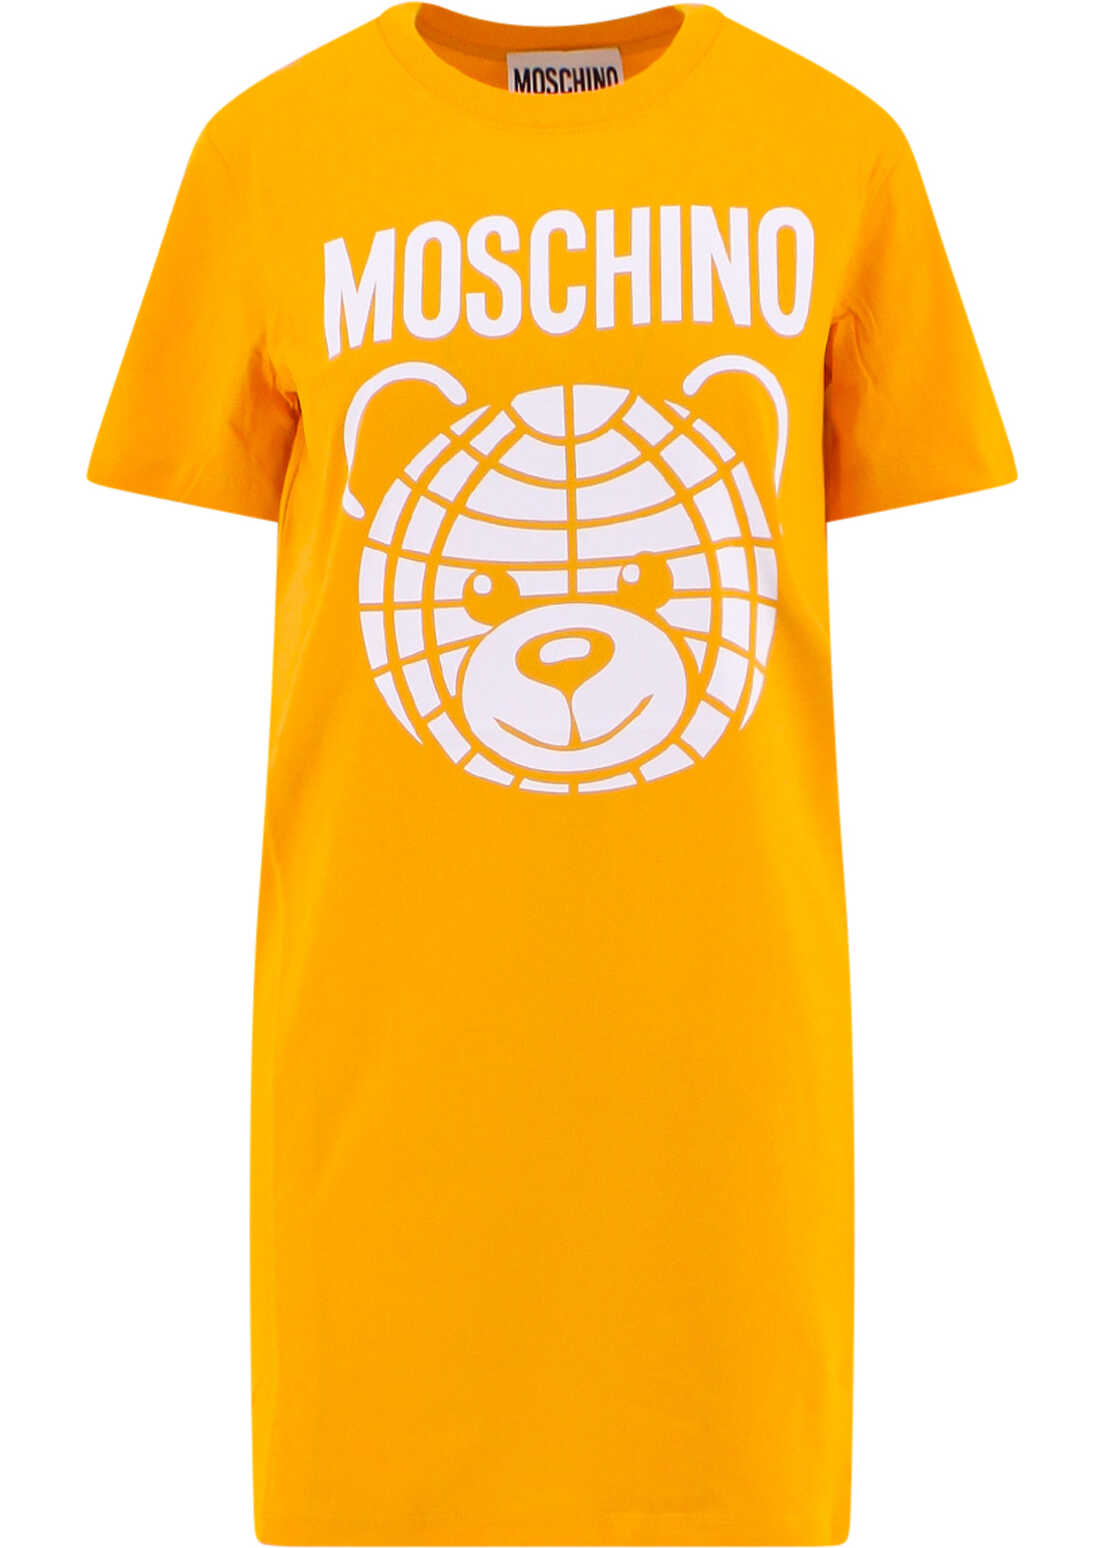 Moschino Dress Yellow